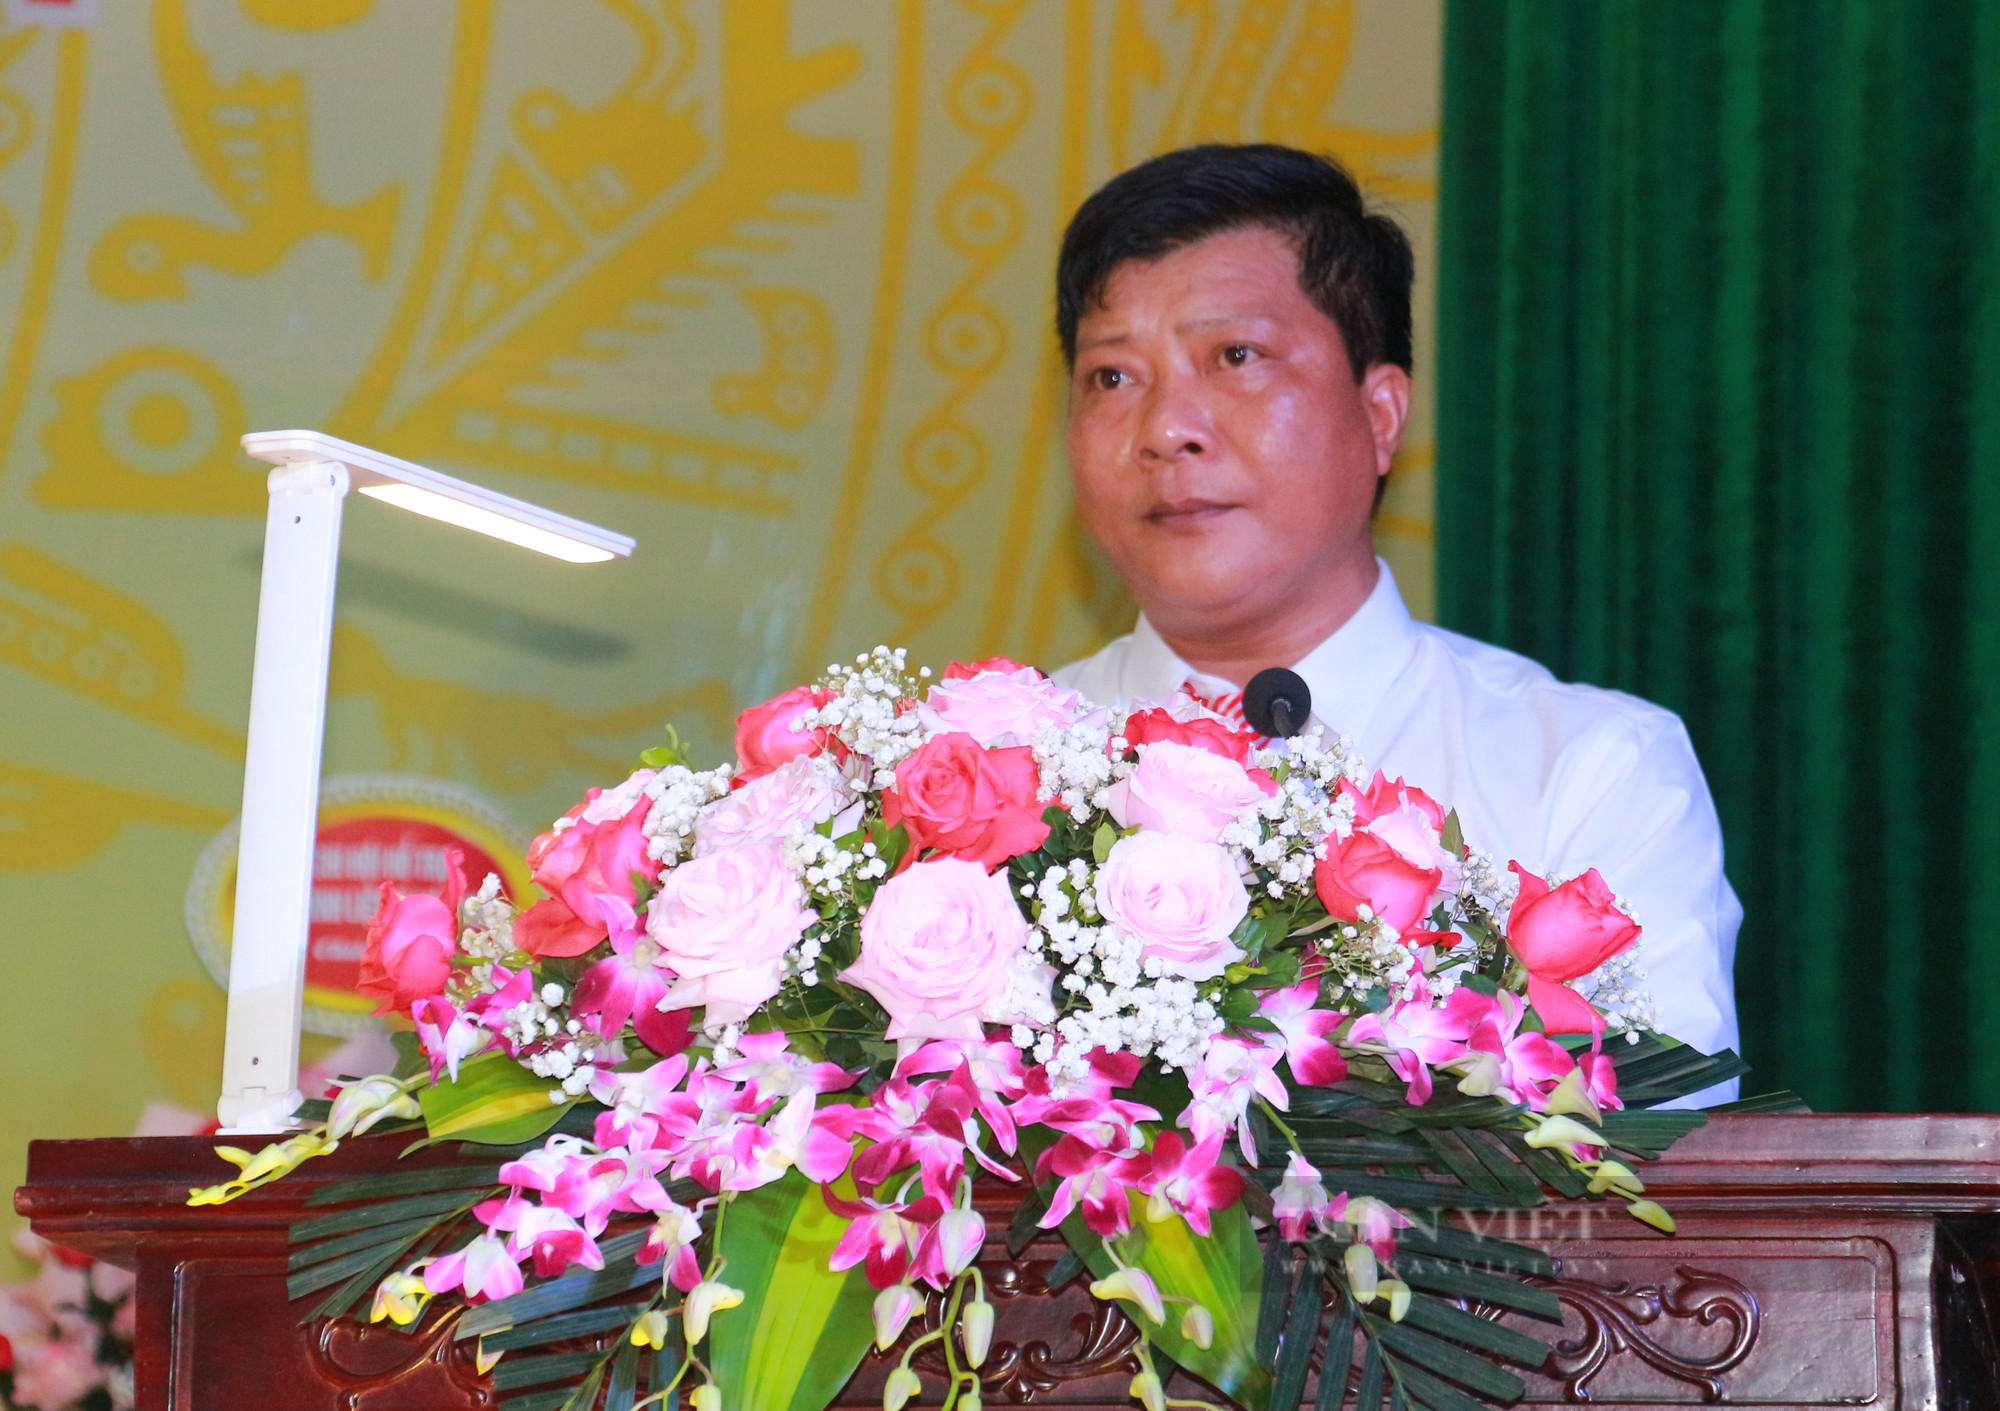 Đại hội Hội Nông dân huyện Giao Thủy, ông Trần Hà Bắc tái đắc cử chức Chủ tịch Hội Nông dân huyện - Ảnh 1.